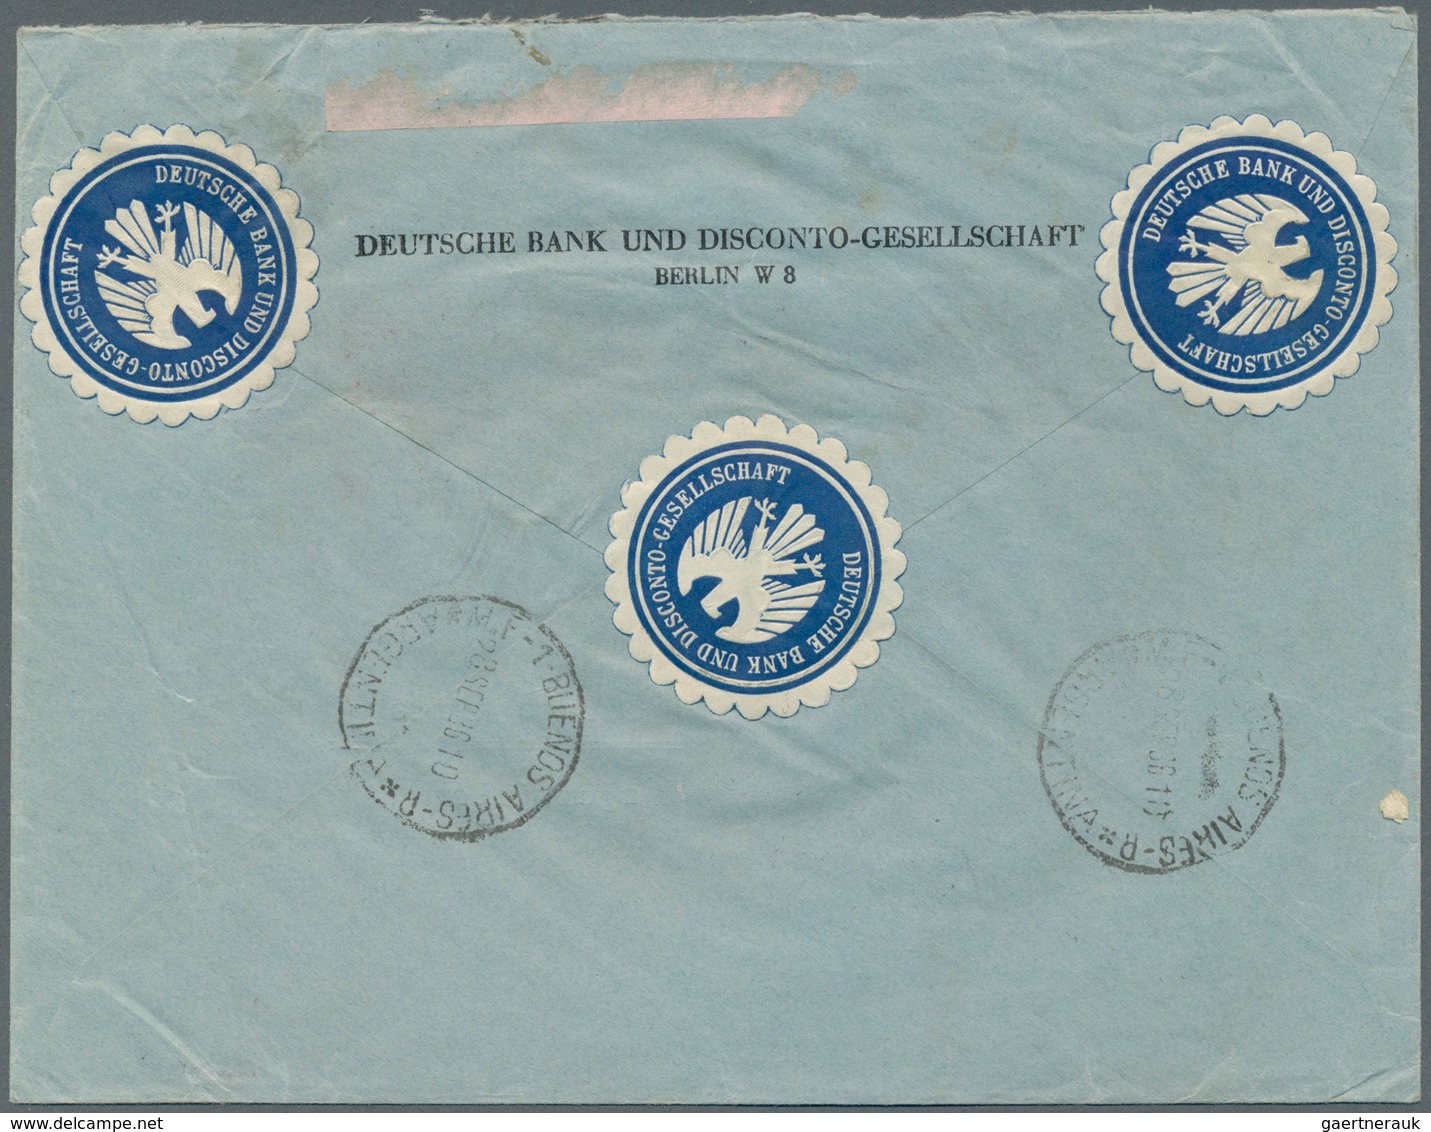 Deutsches Reich - 3. Reich: 1936 (32.9.), Chicagofahrt 3x 4 Reichsmark (senkrechtes Paar + Einzelstü - Briefe U. Dokumente